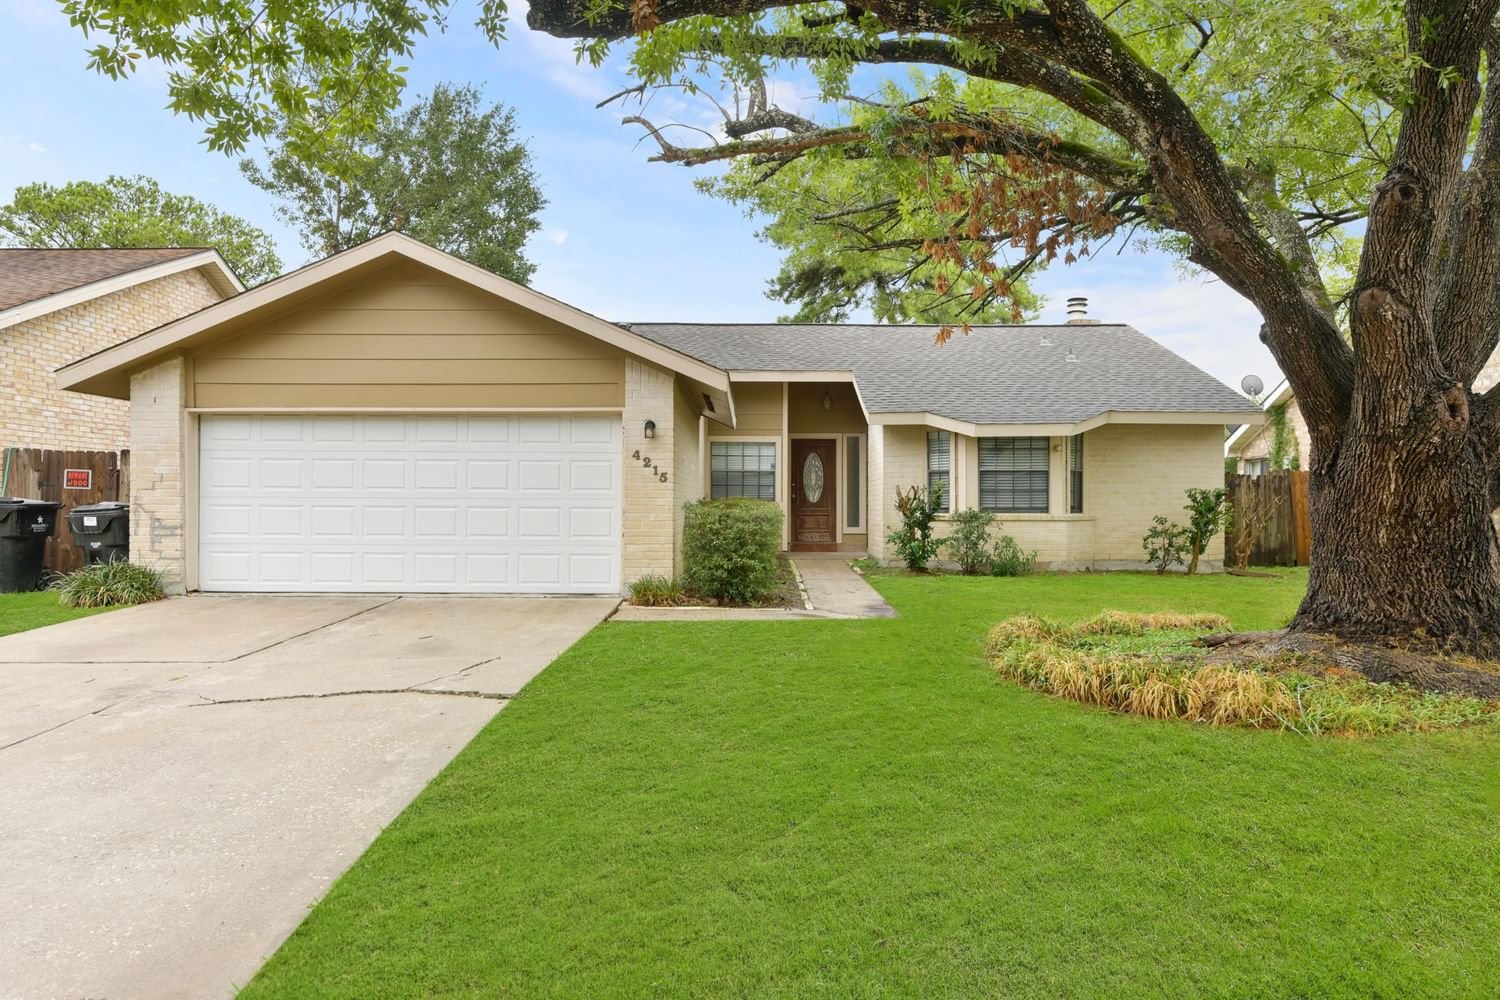 Real estate property located at 4215 Terrace Creek, Harris, Sableriddge Sec 01 Rep, Houston, TX, US